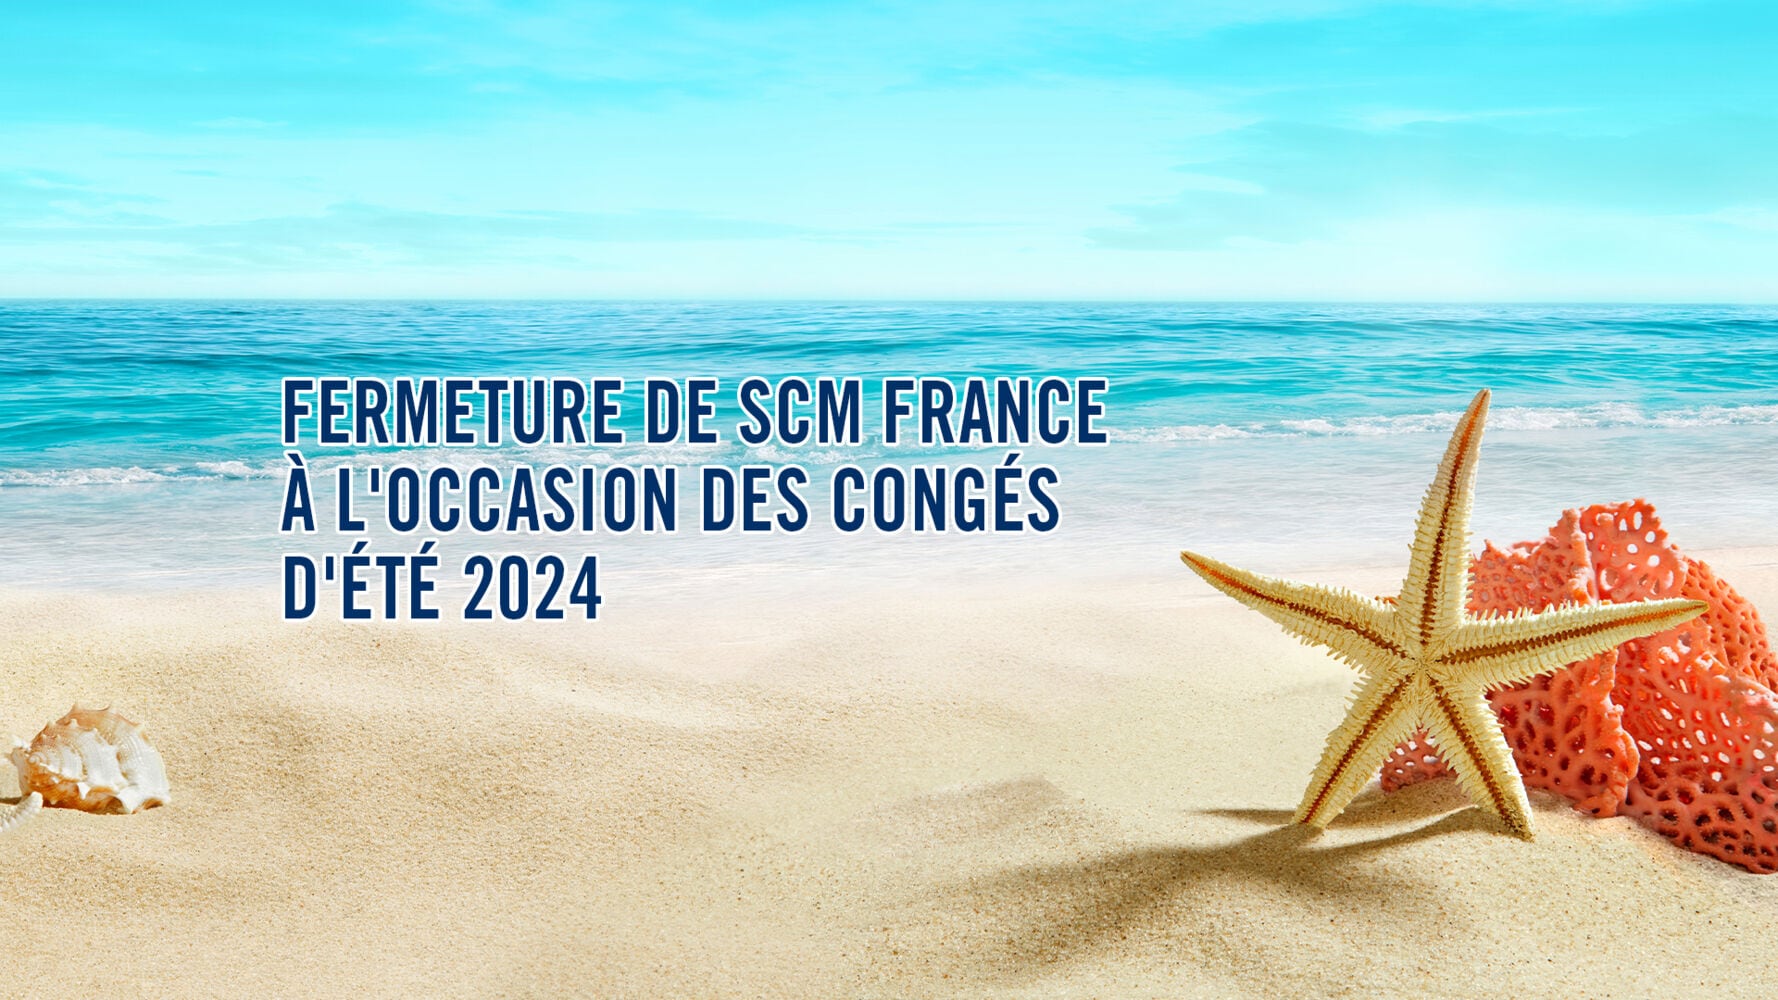 Fermeture Scm Group France à l’occasion des congés d’été